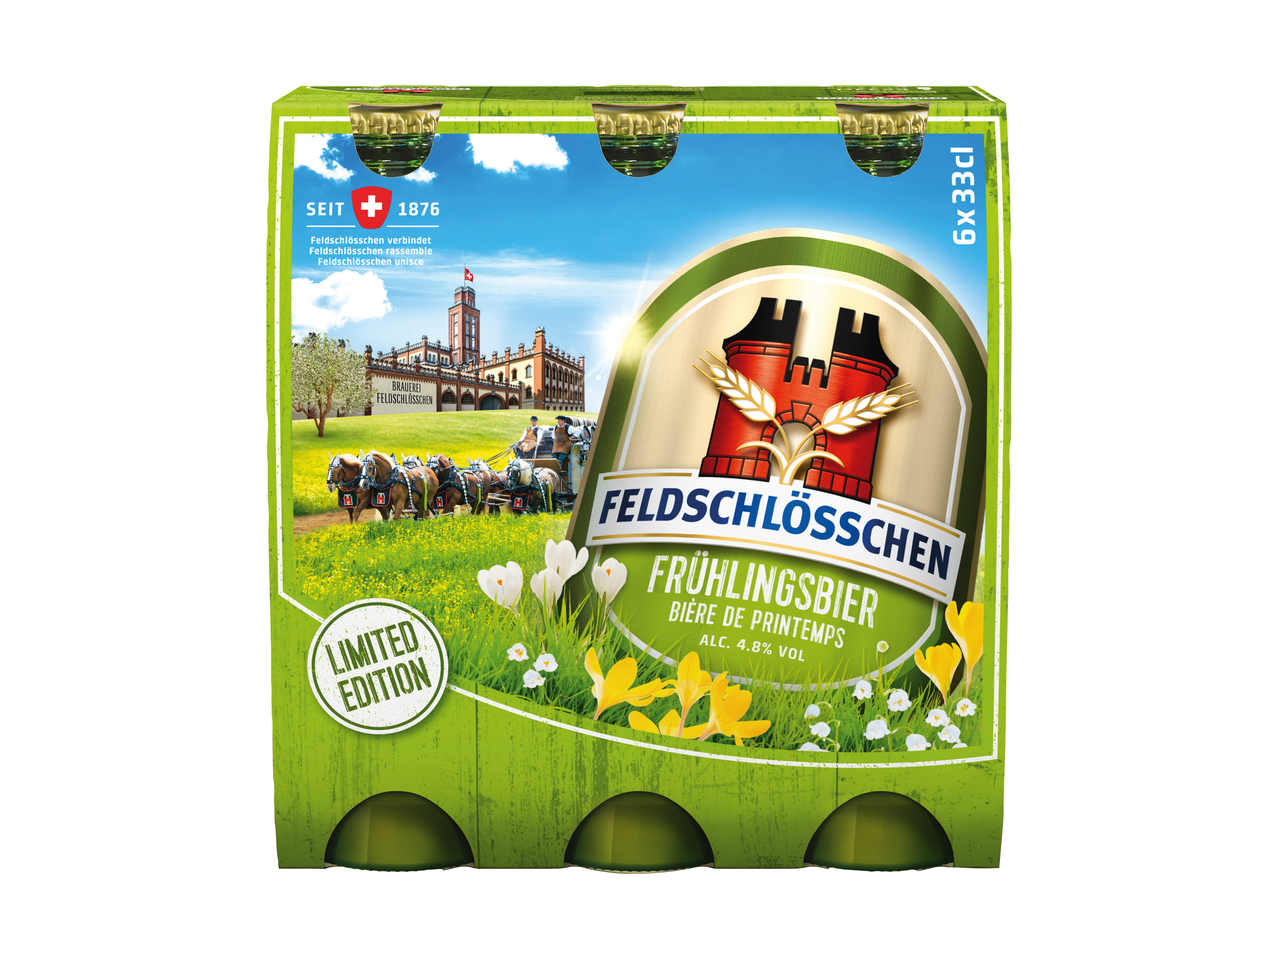 Feldschlösschen bière de printemps 4,8% vol.